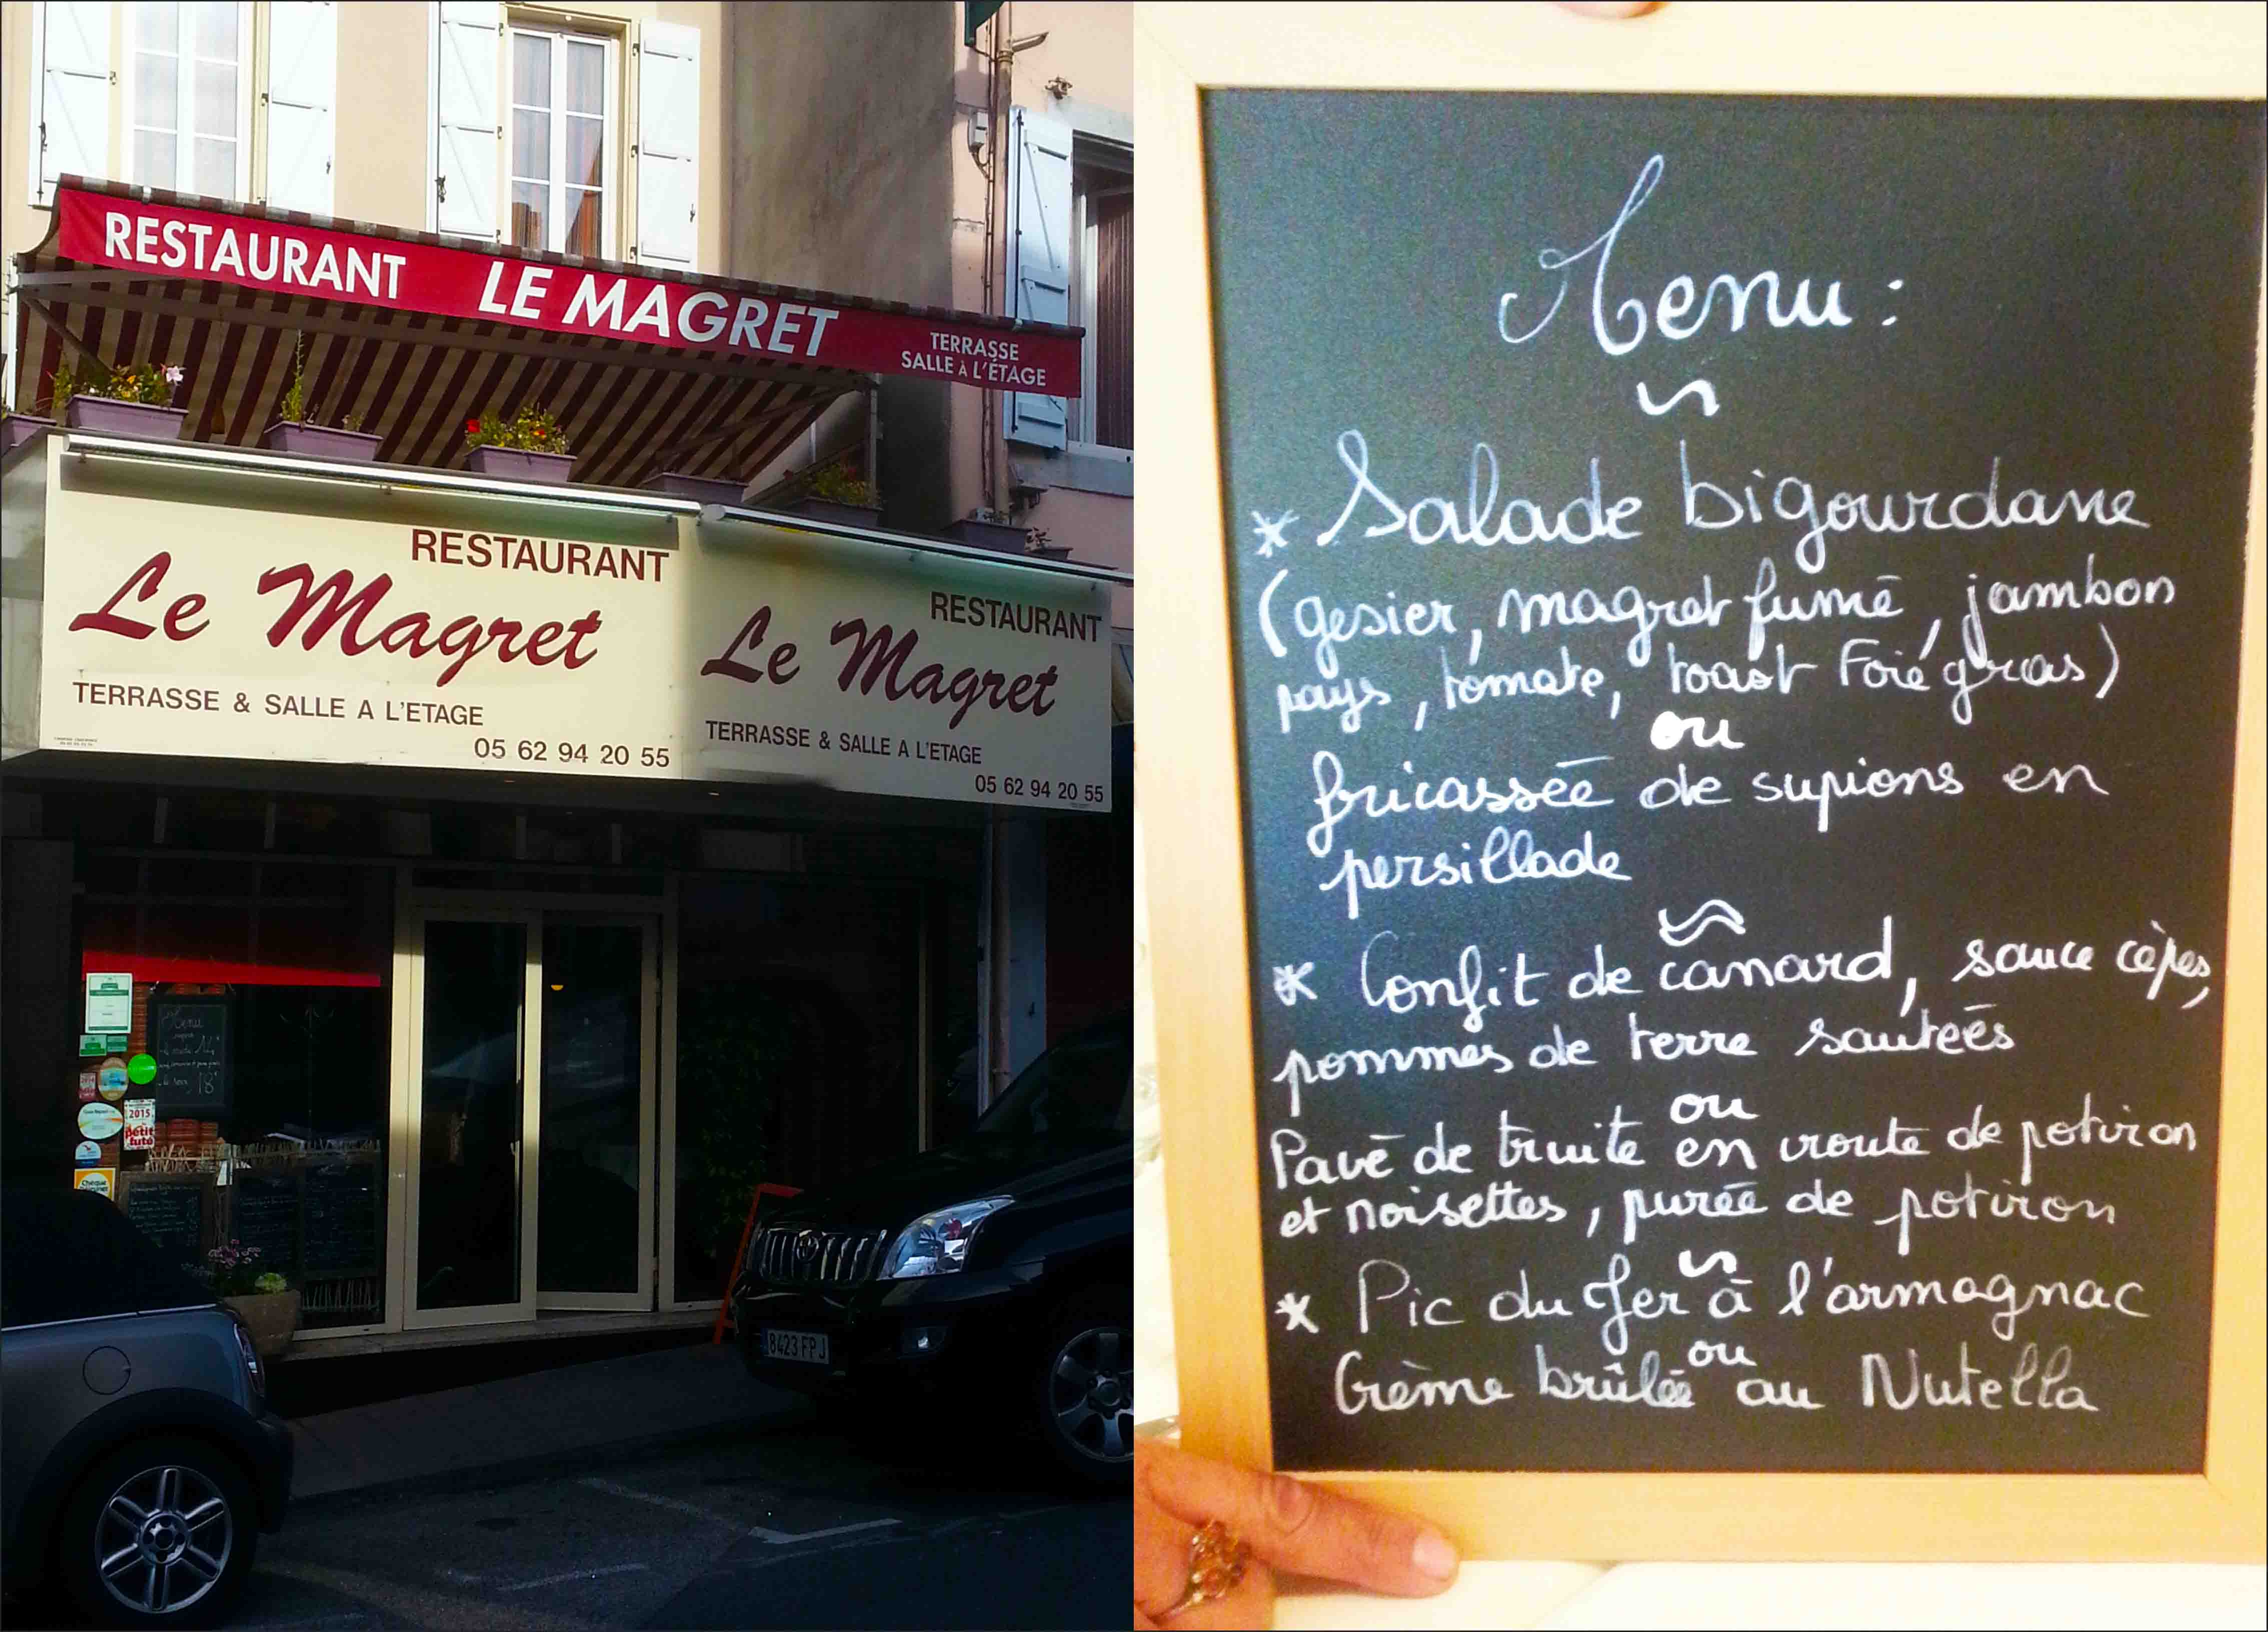 Restaurante e menu. Os franceses são autênticos e regionalistas